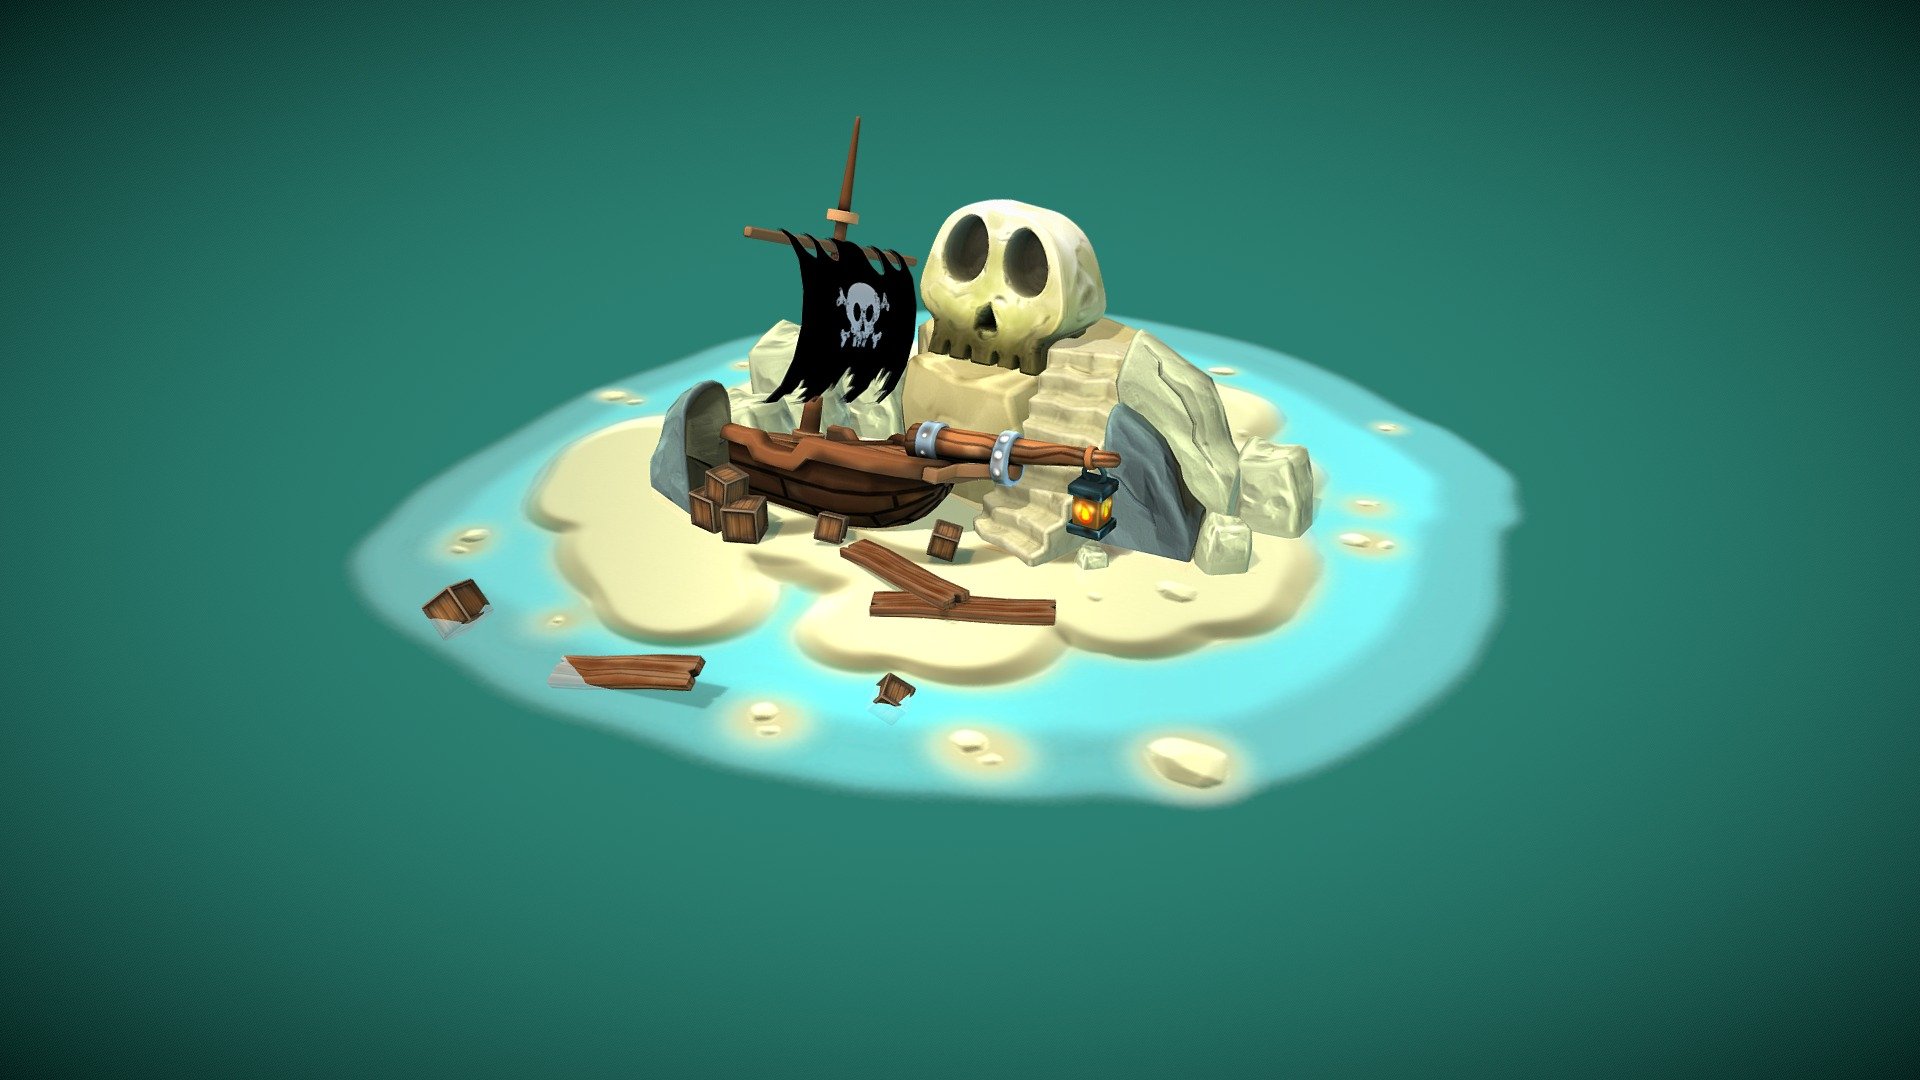 Pirate Scene - 3D model by milamila 3d model